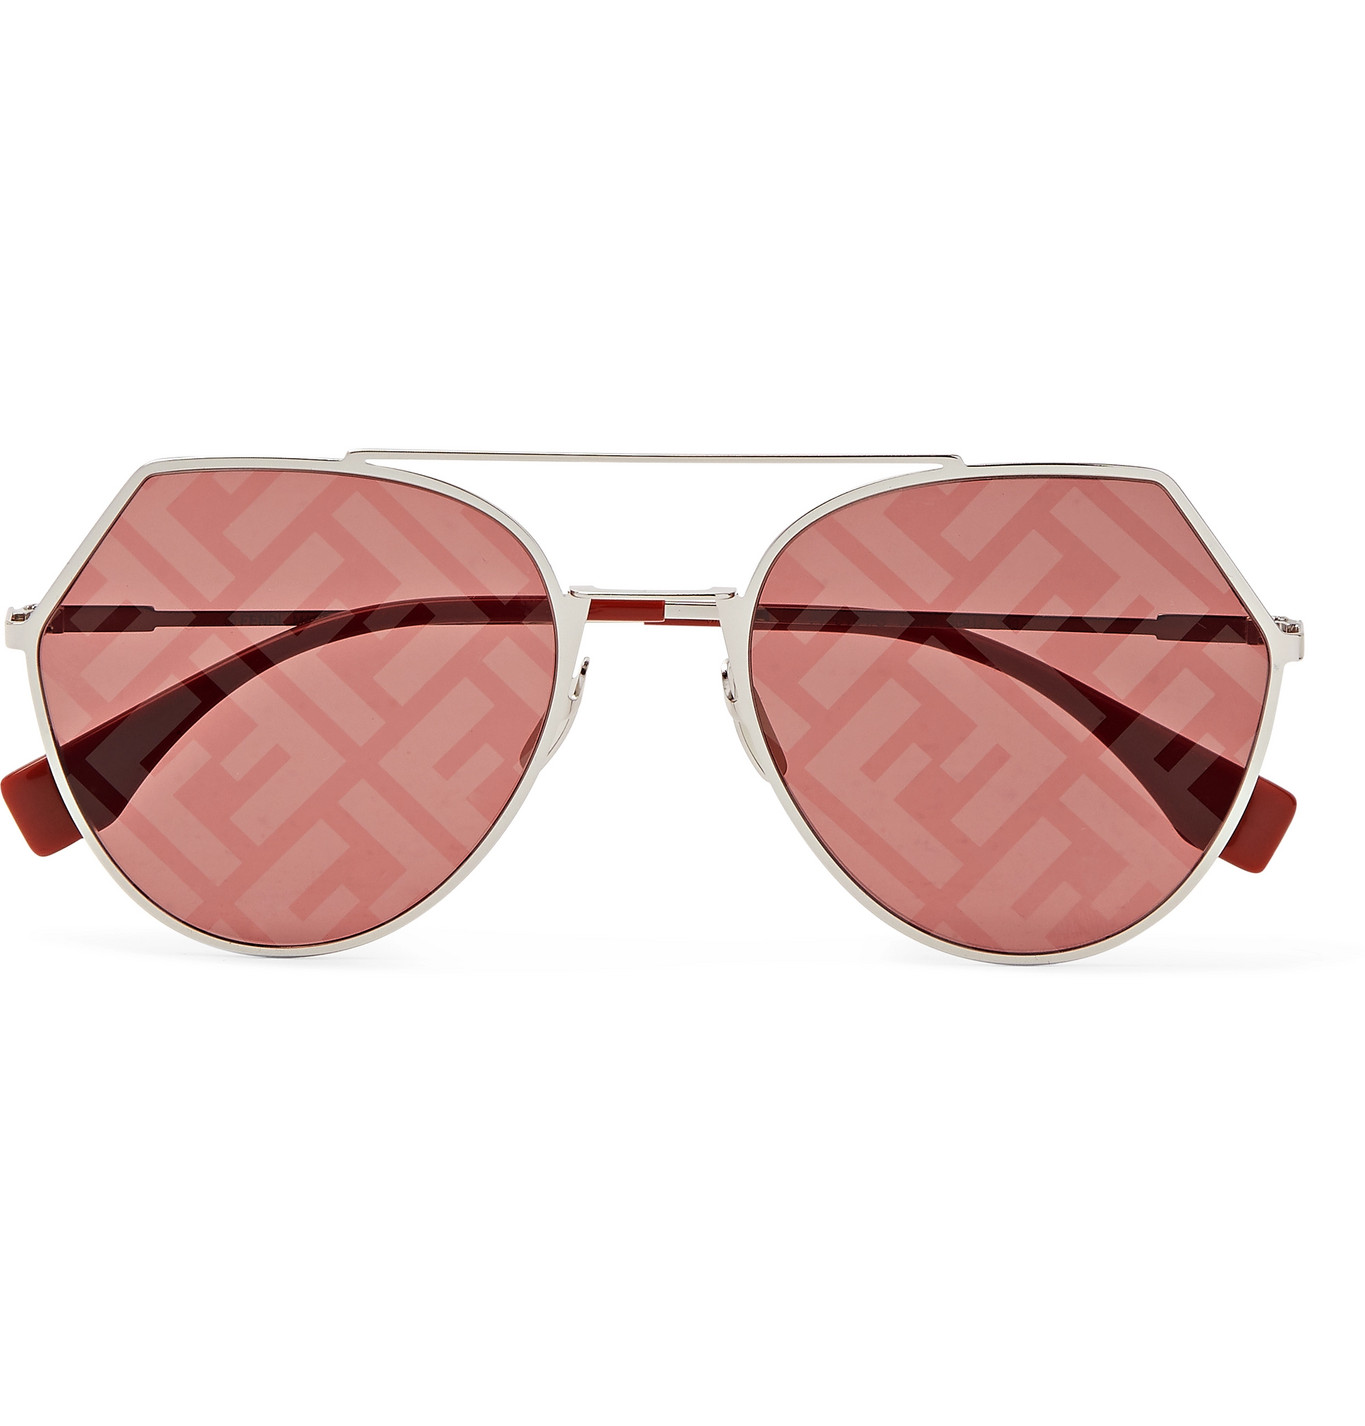 fendi round frame sunglasses